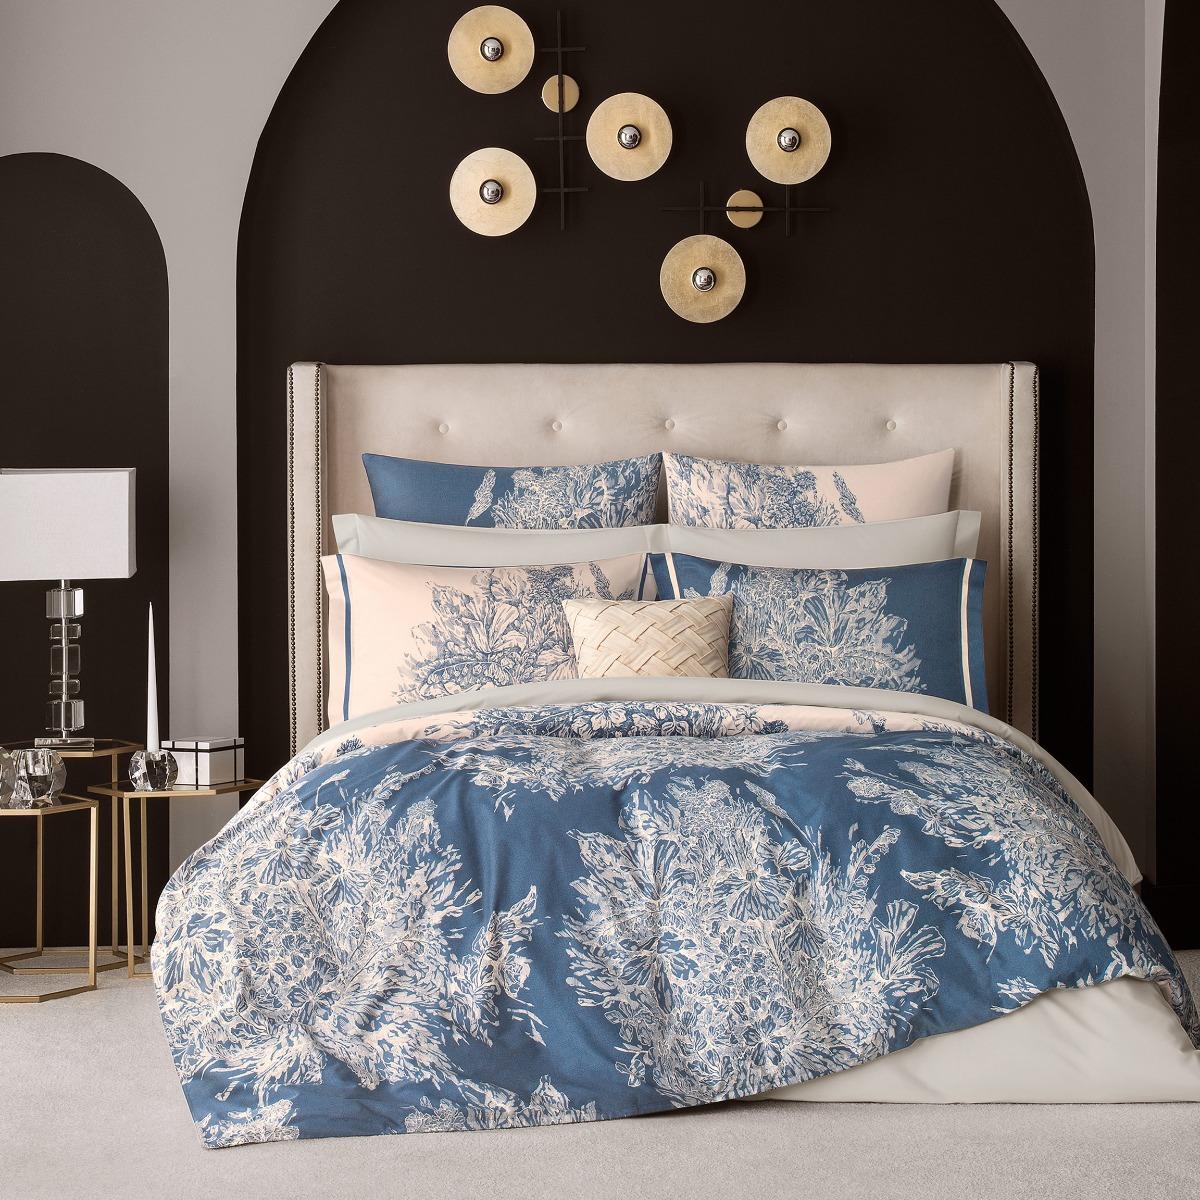 Комплект постельного белья Togas Фонтени бежевый с синим Двуспальный кинг сайз комплект садовой мебели lf бежевый с синим из 4 предметов